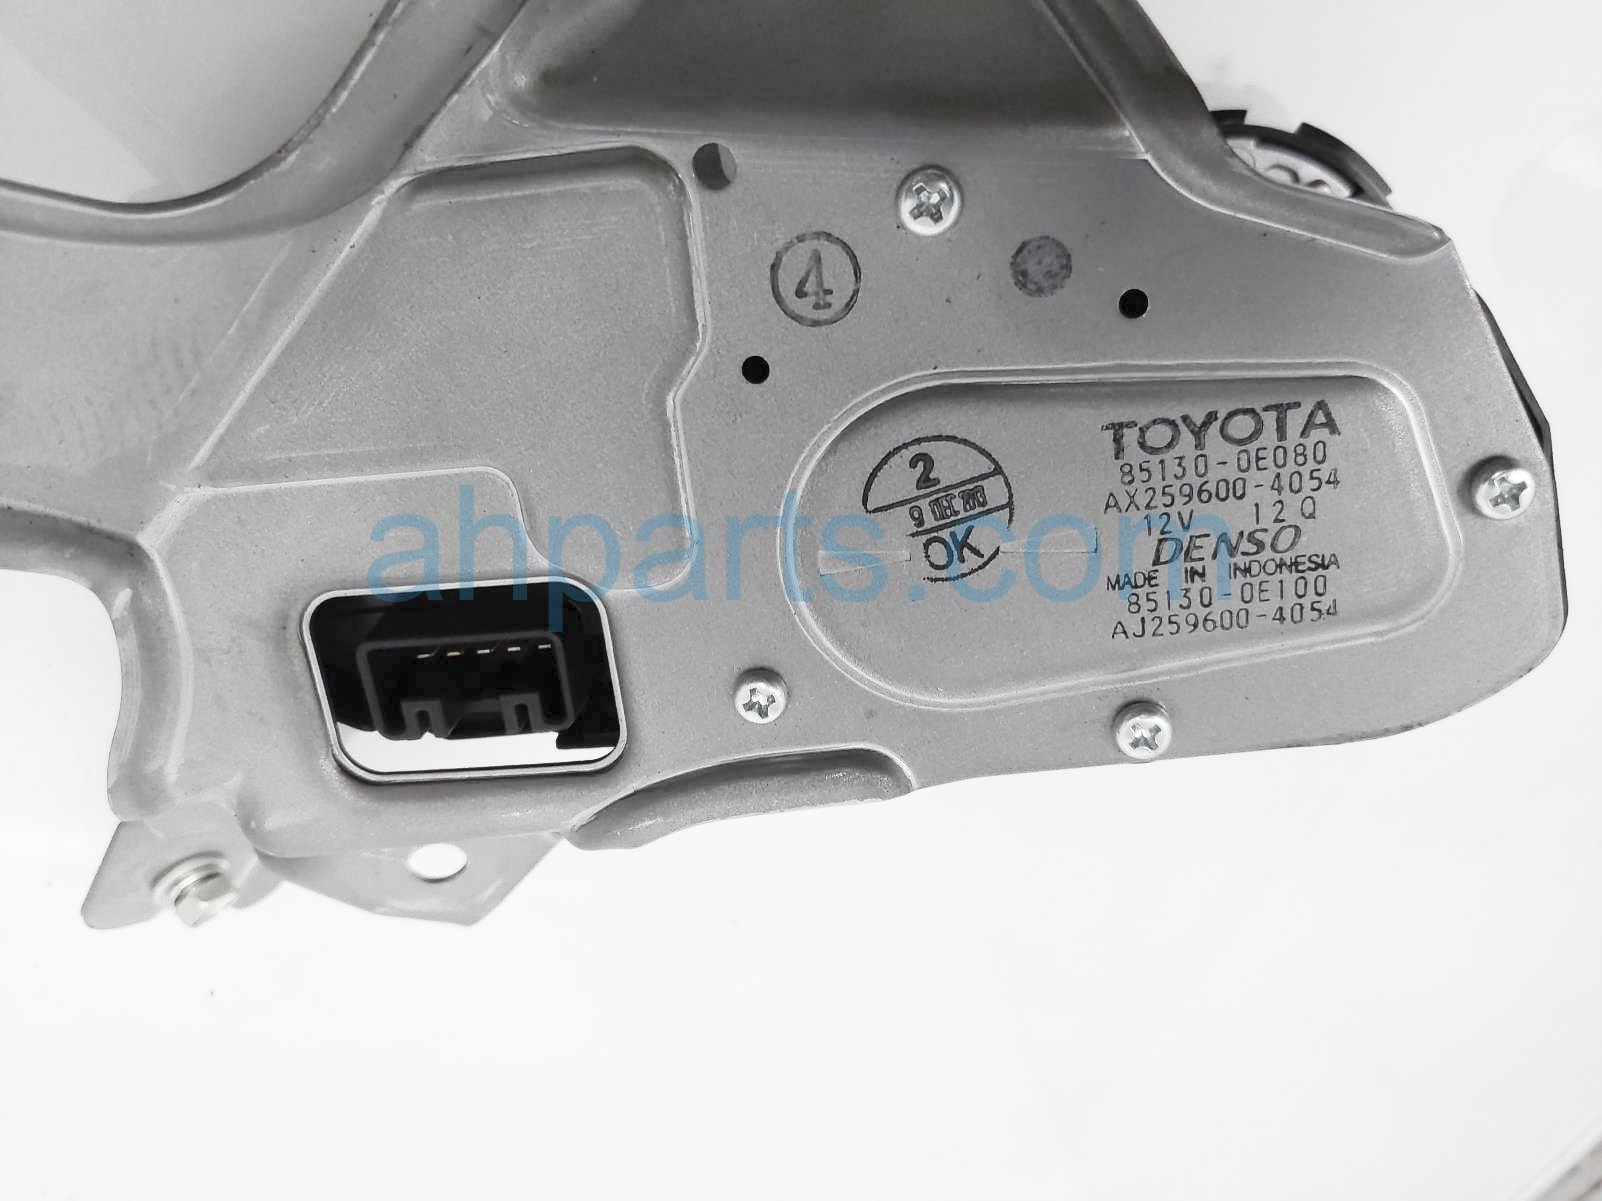 Sold 2014 Toyota Highlander Windshield Rear Wiper Motor Assy 85130 